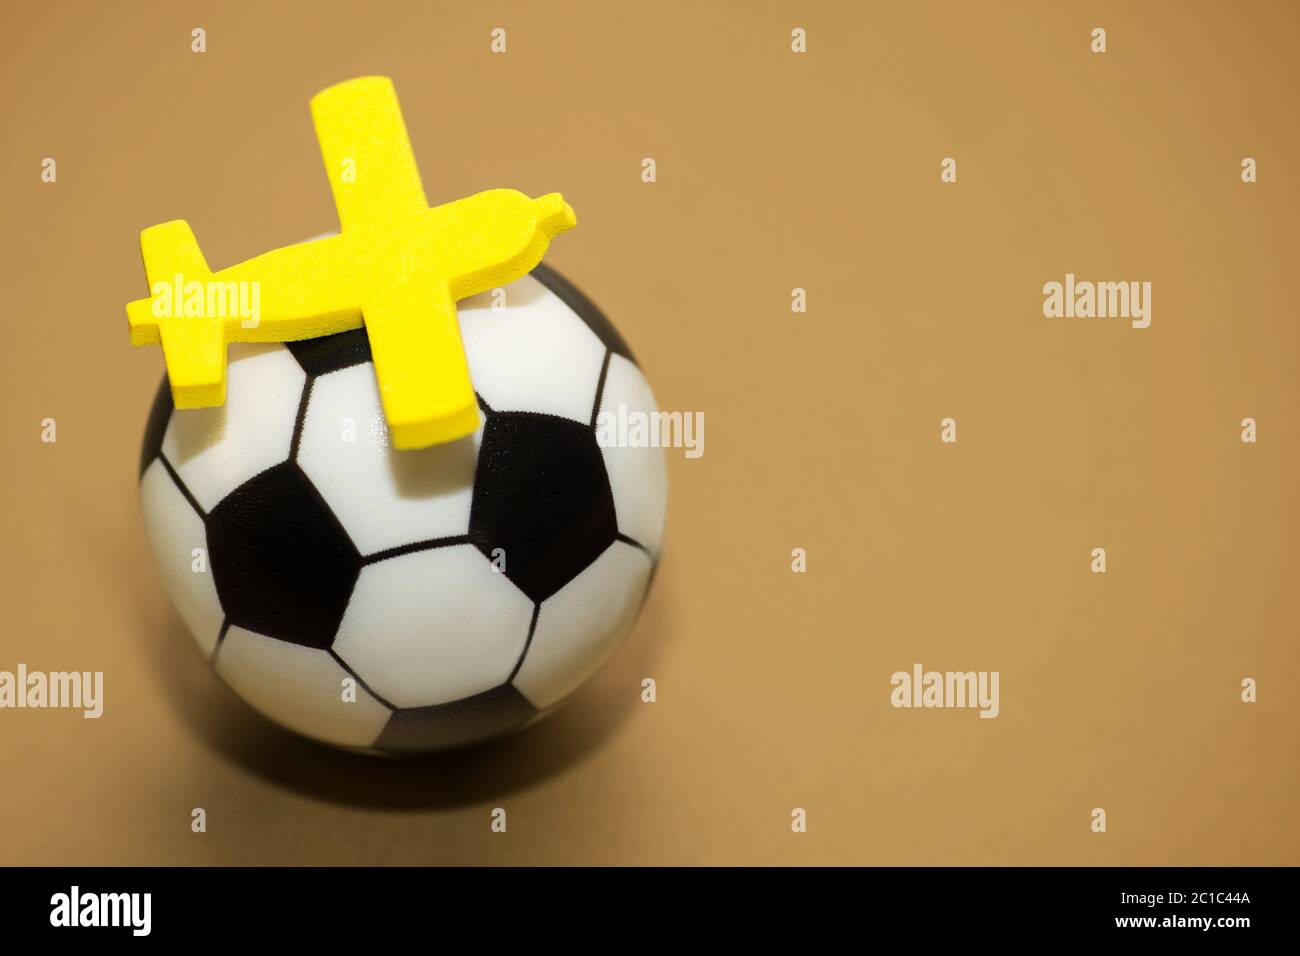 Avion jouet jaune sur un ballon de soccer. Le concept de l'avion pour le championnat de football. Banque D'Images